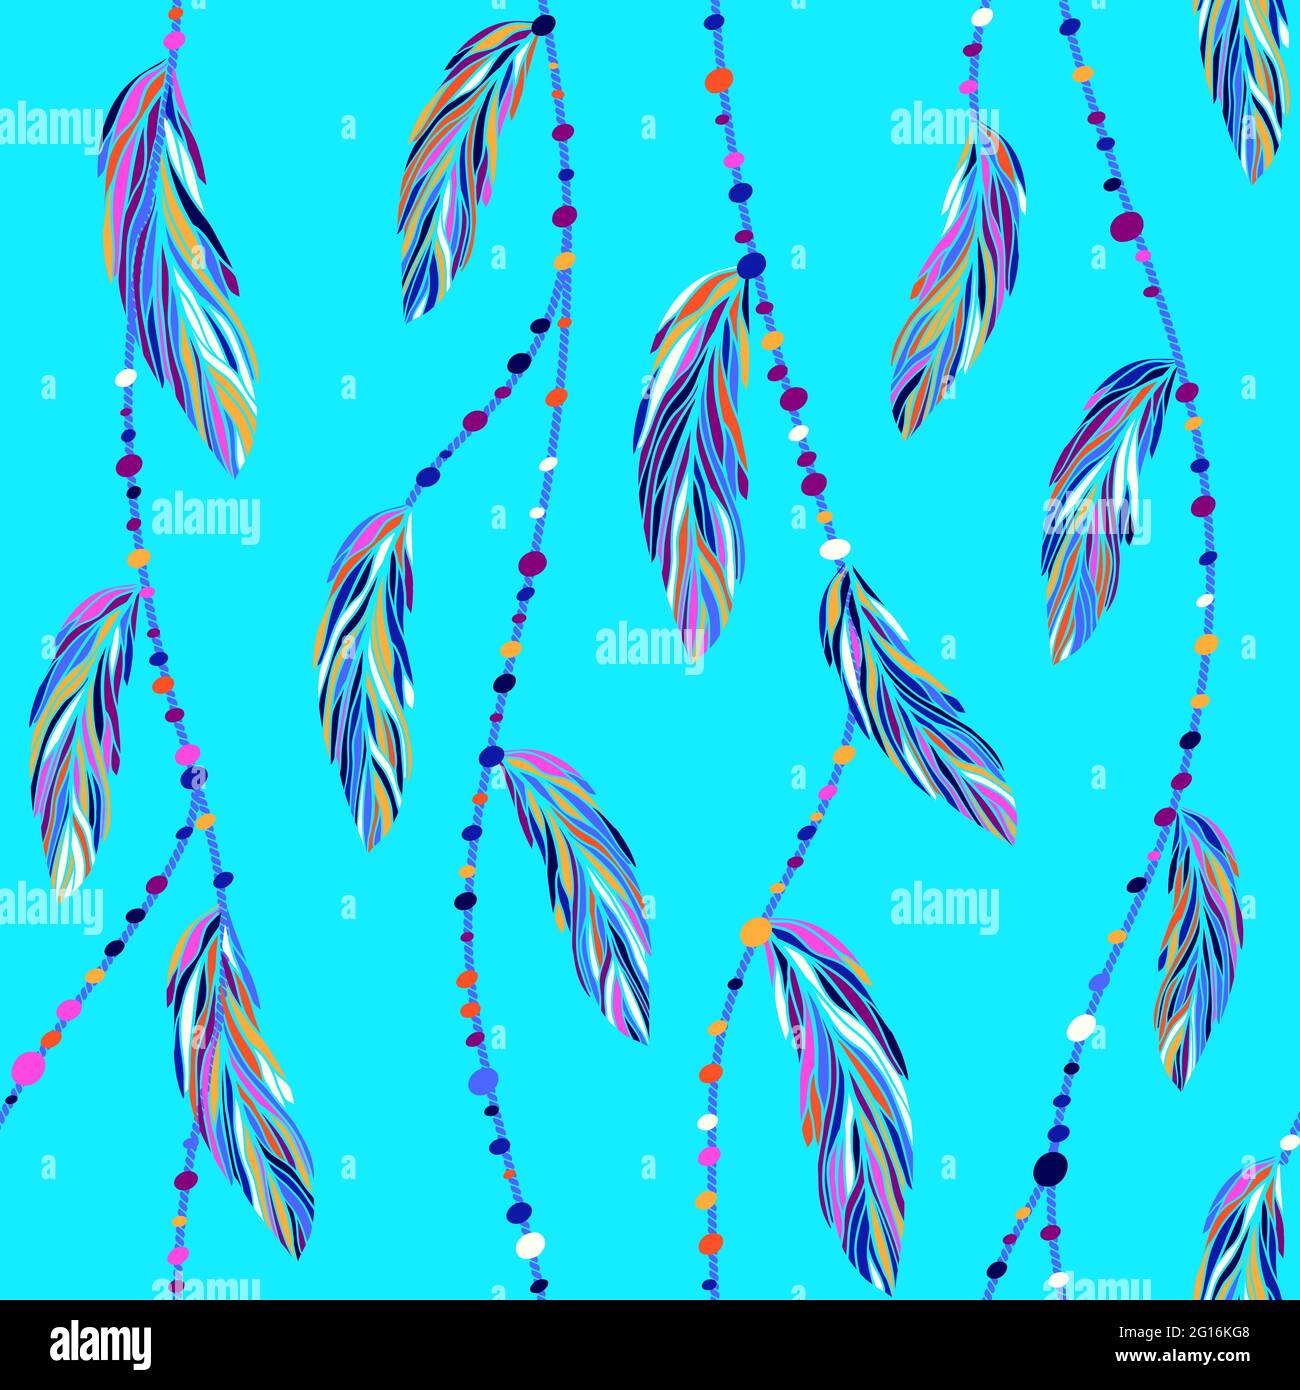 Bunte exotische tropische Vogelfedern, Boho Fäden und Perlen nahtlose Vektor-Muster. Verschiedene mehrfarbige Federn Vektor-Illustration, Boho-Stil. Stock Vektor